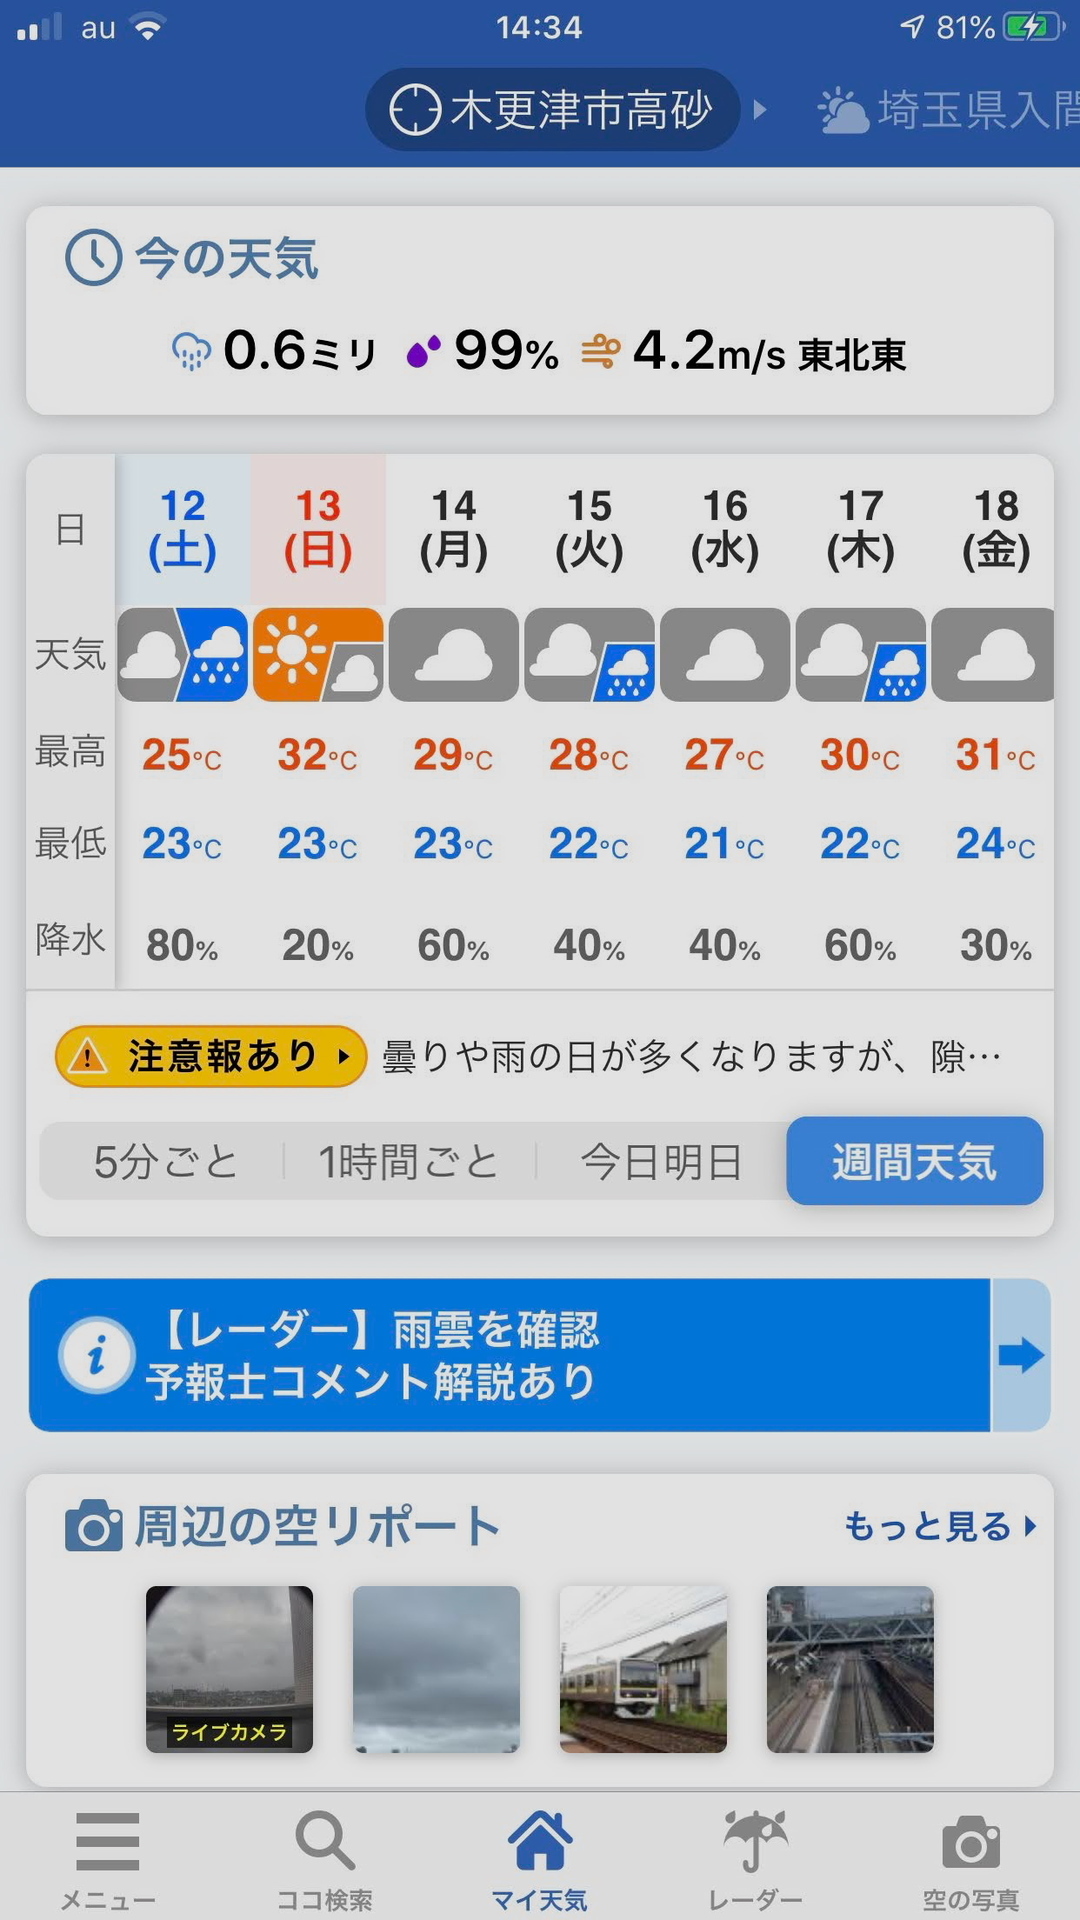 ウェザーニュースの 5分ごとの天気予報は便利だ Ogu S Blog かずさ便り ちょっとだけpcの話も